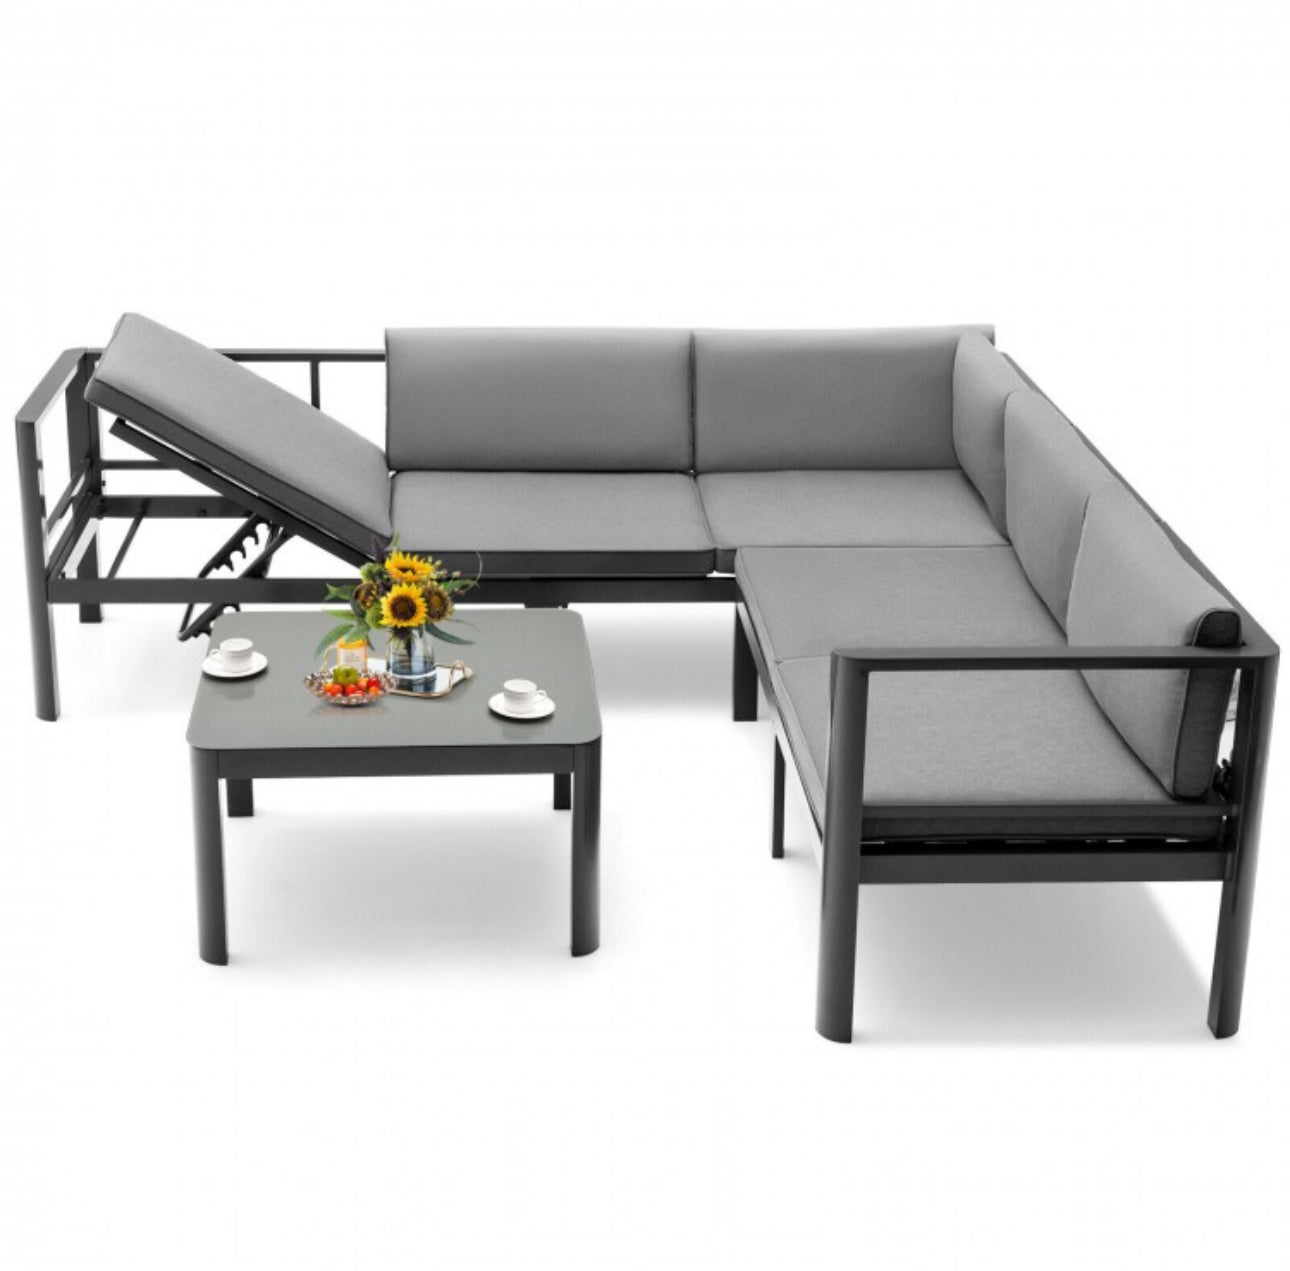 Heavy Duty Comfortable Modern 3-Piece Aluminum Patio Furniture Set With 6-Level Adjustable Backrest, Rustproof, Indoor, Outdoor